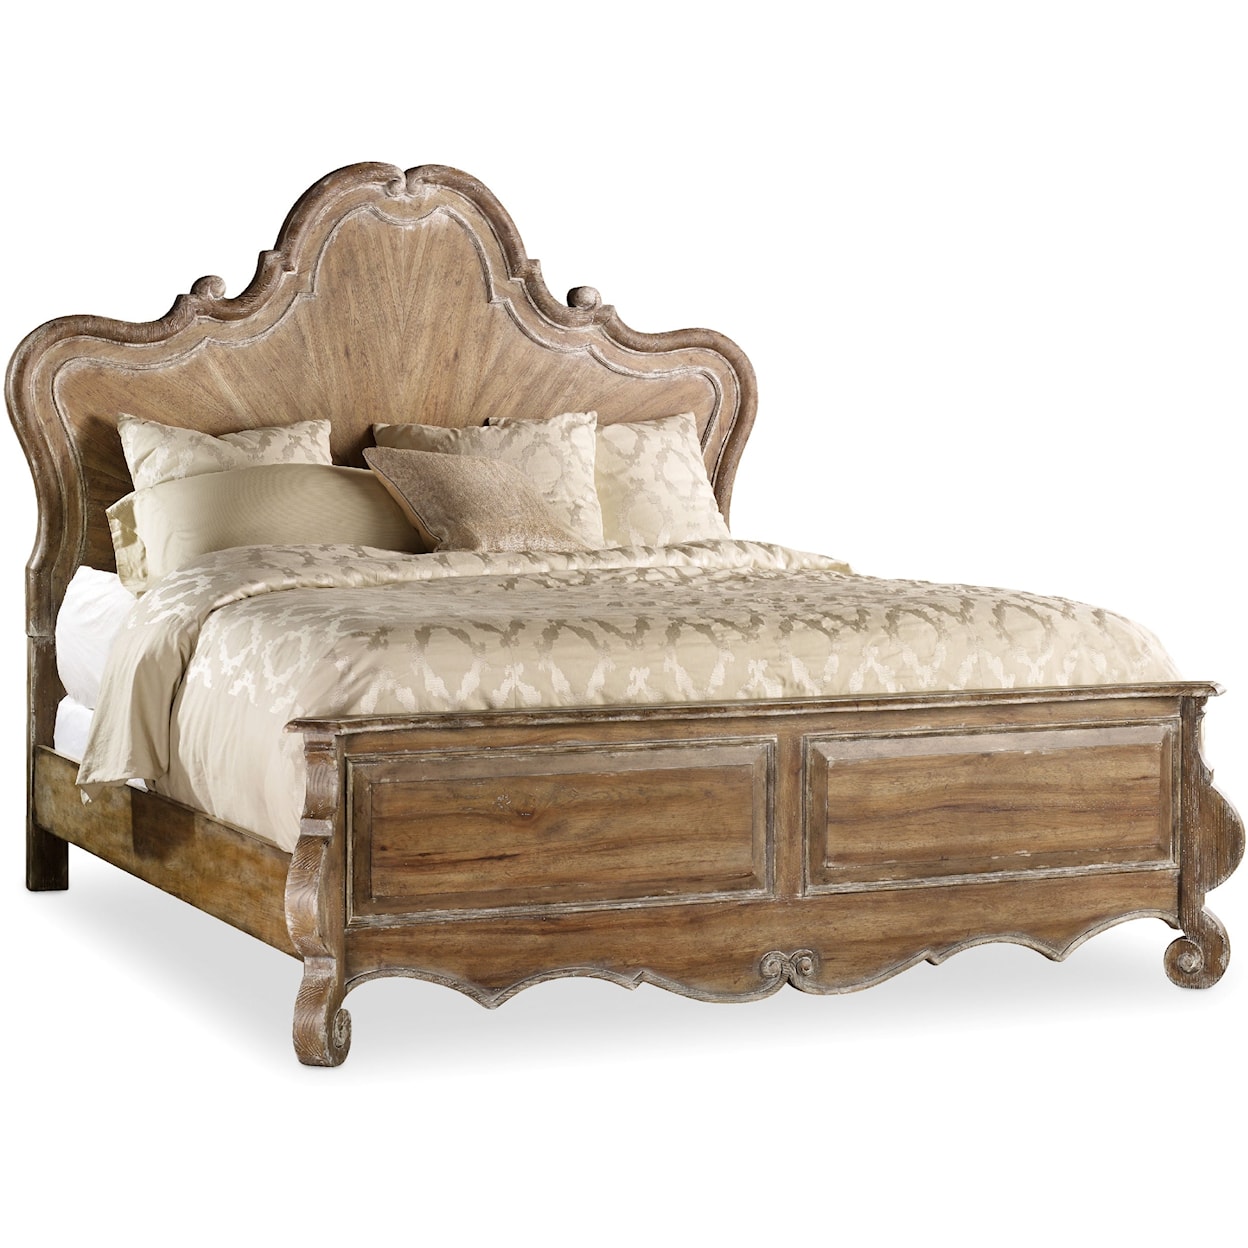 Hooker Furniture Chatelet 6/6 Wood Panel Bed